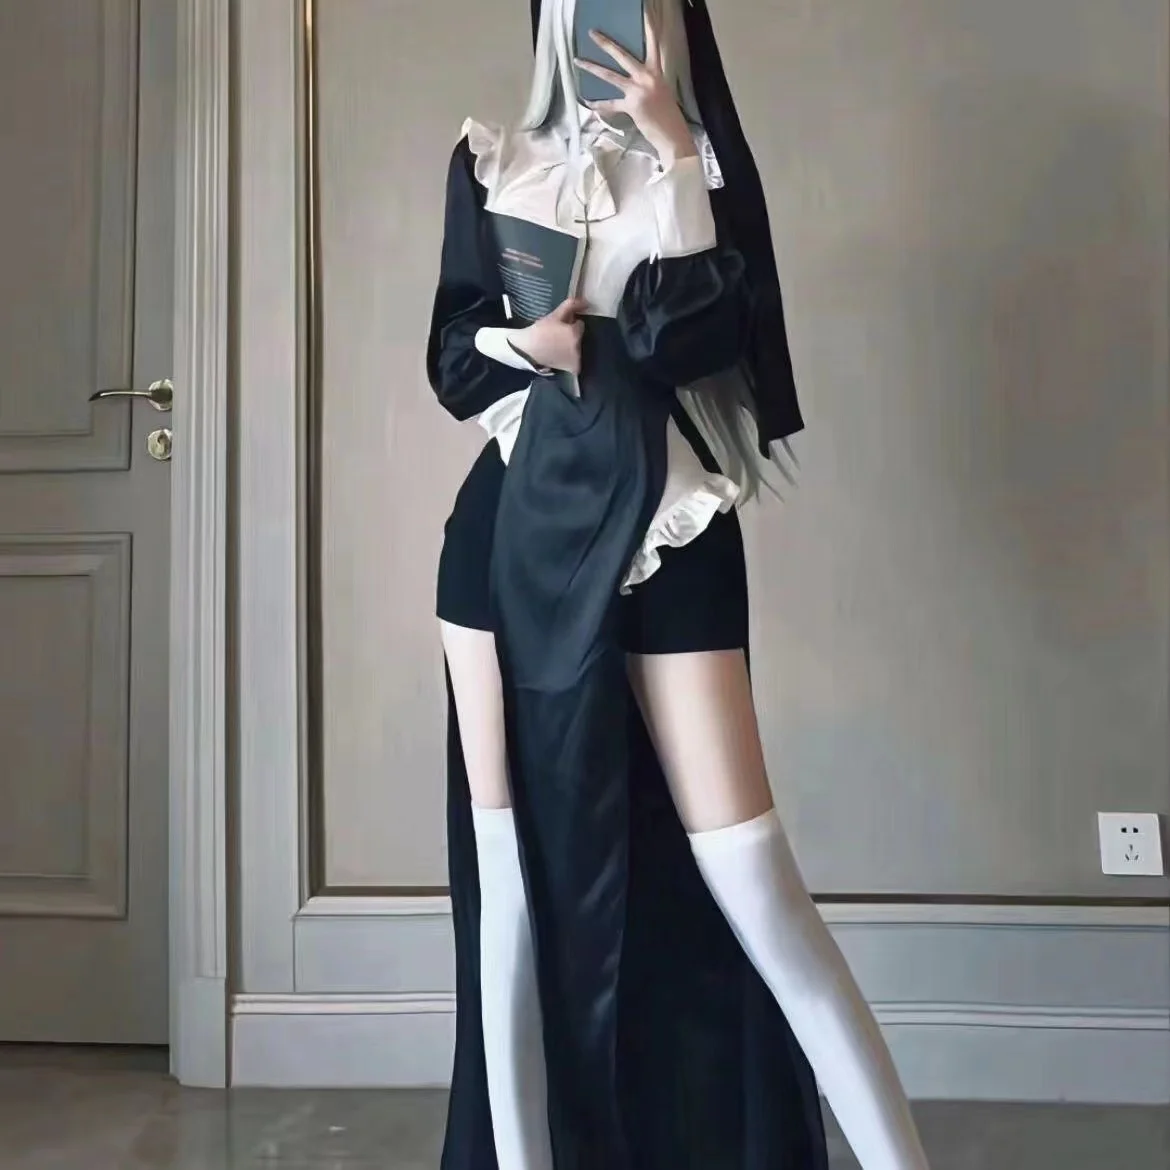 Аниме Vibrastar Сестра Косплей Сексуальная монахиня Платье с высоким разрезом + Боди с открытой спиной + Головной убор Полный комплект Хэллоуин Костюм Drop Ship